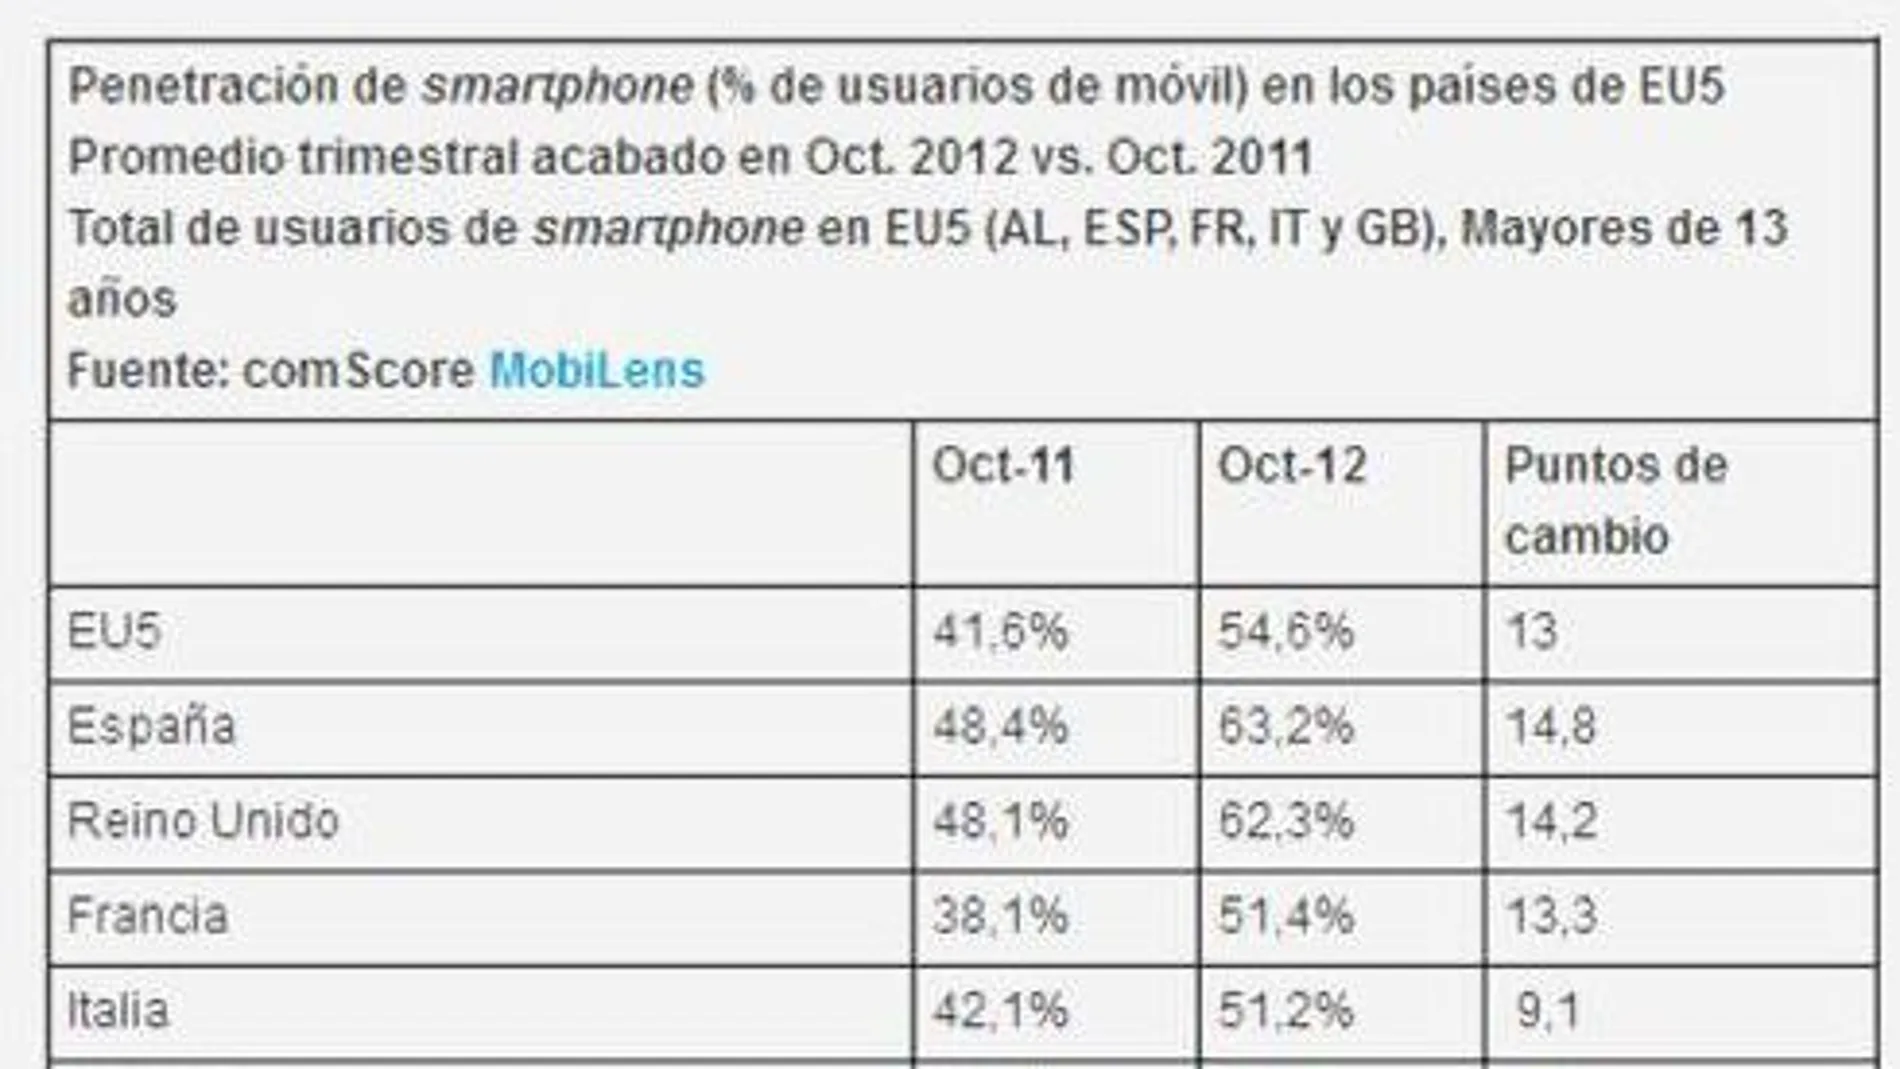 La penetración de los smartphone en España lidera el mercado europeo